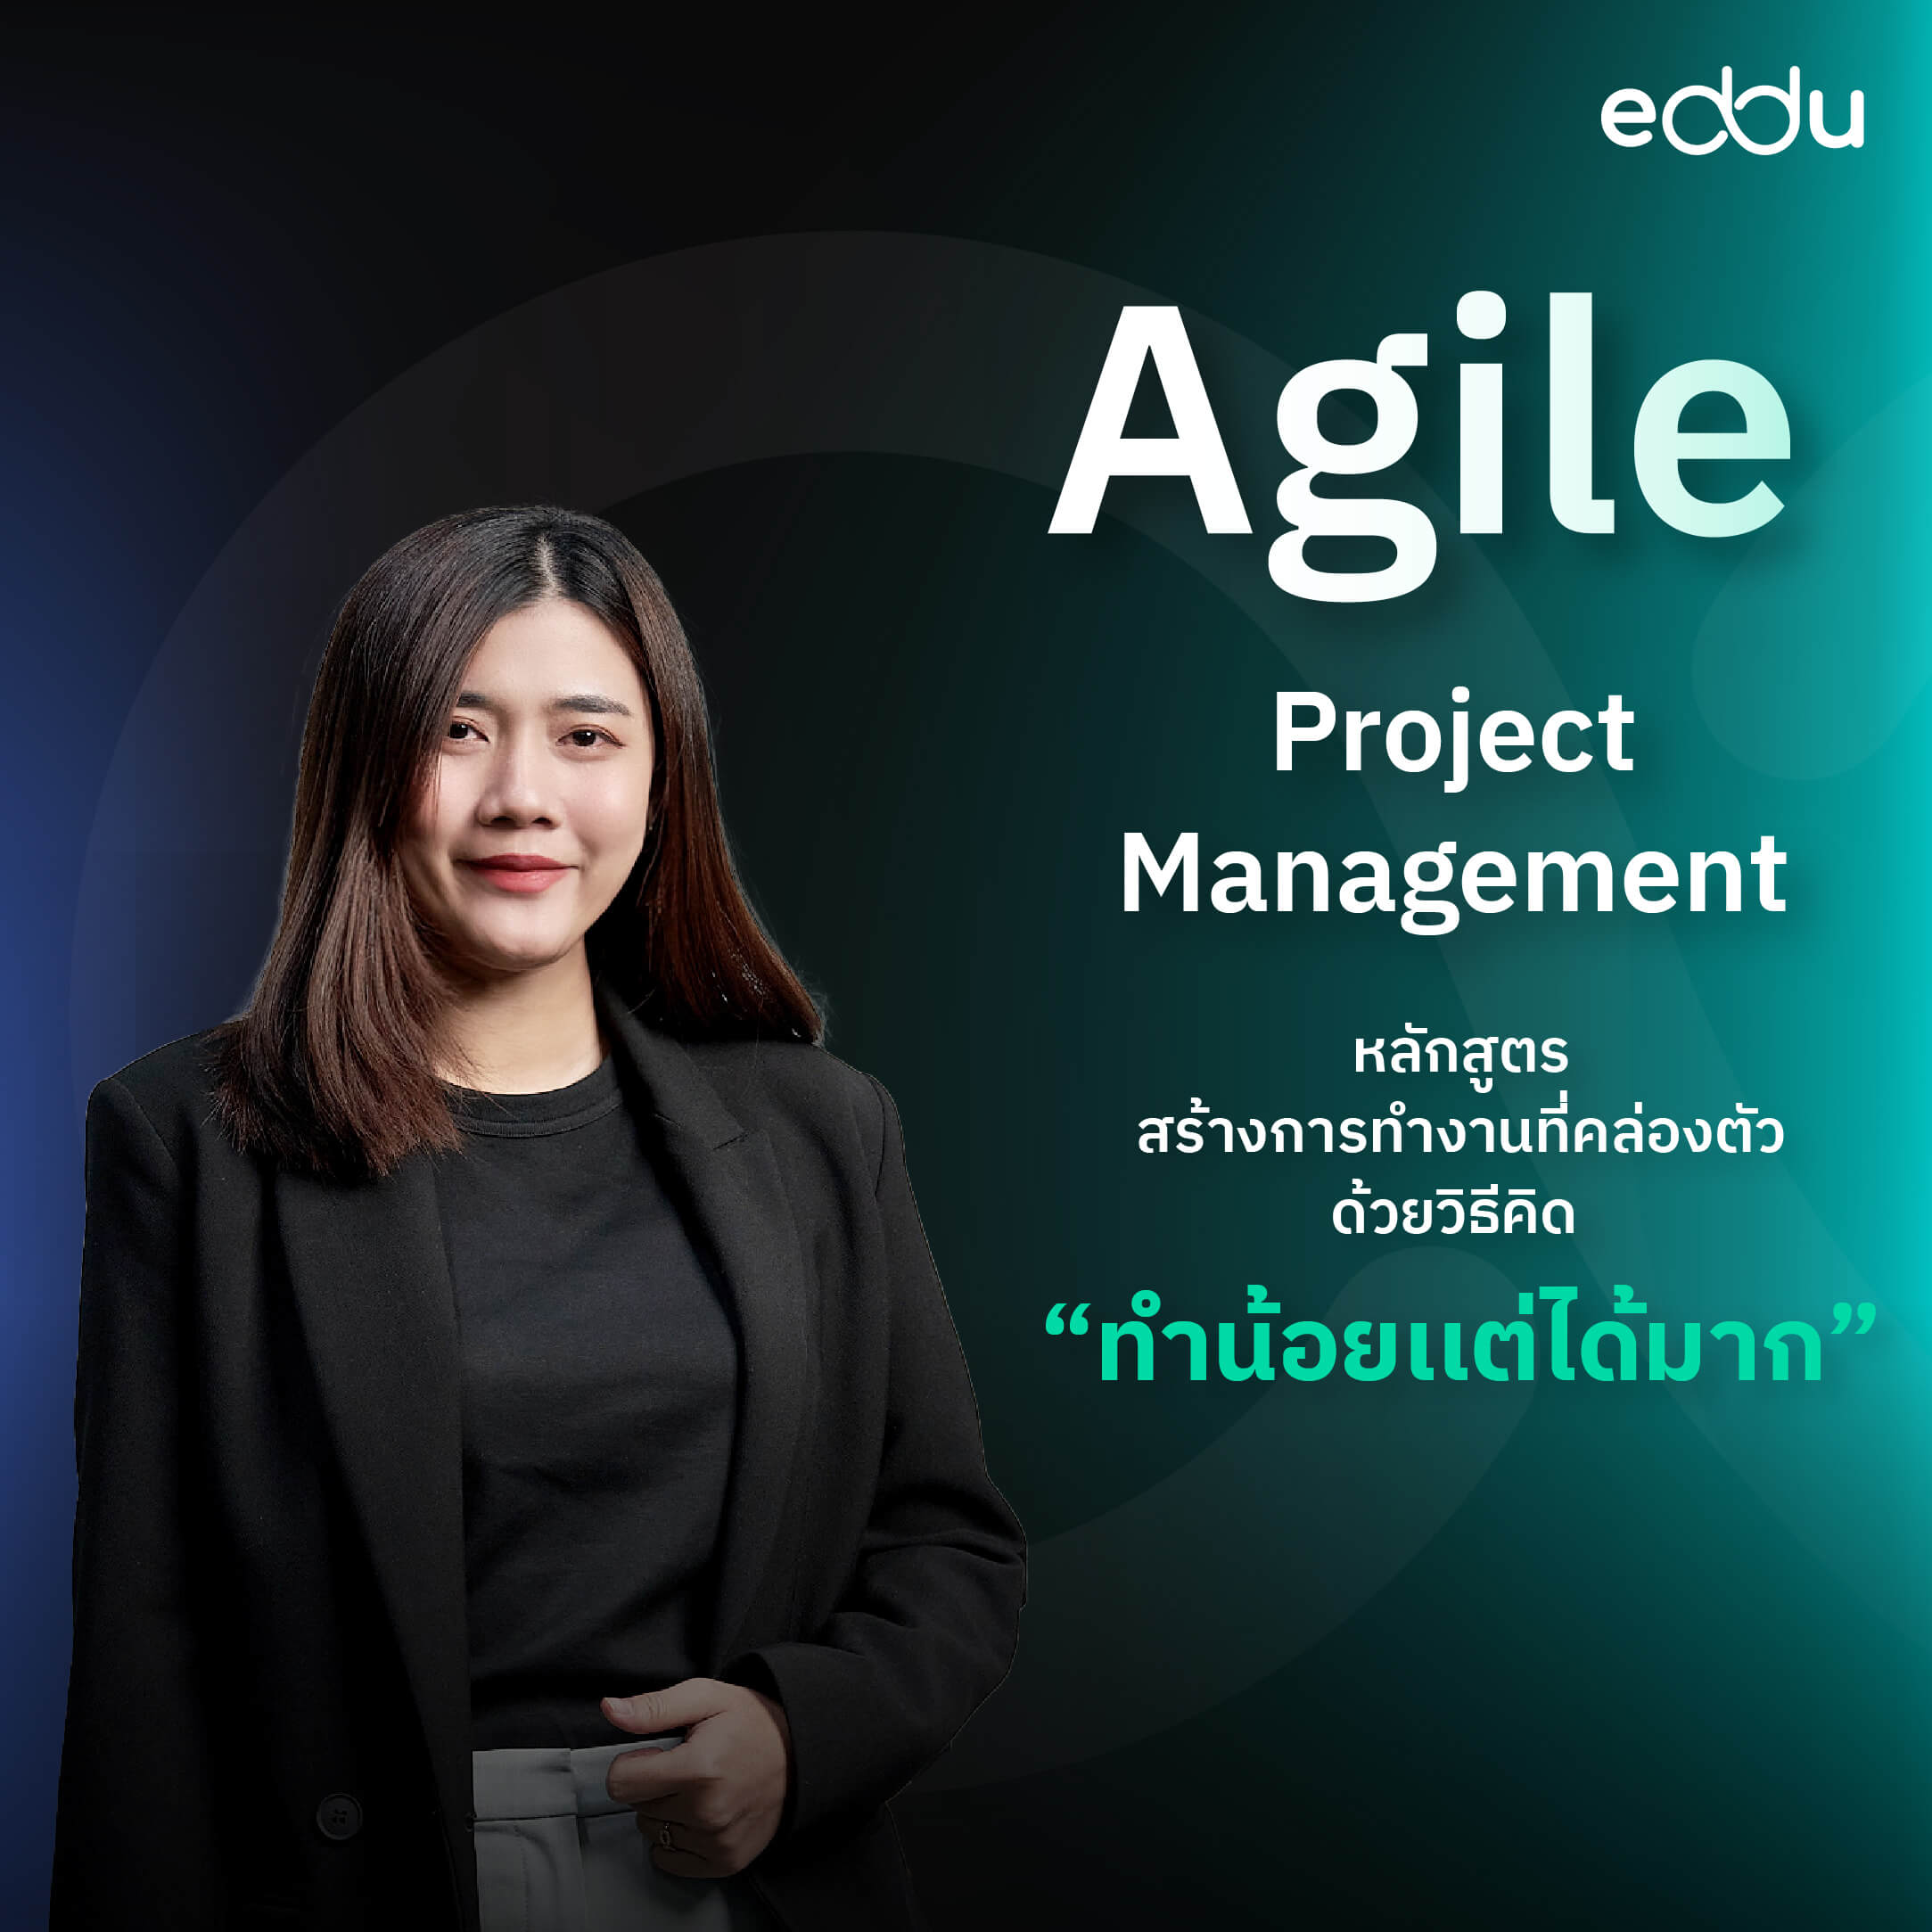 หลักสูตร Agile Project Management